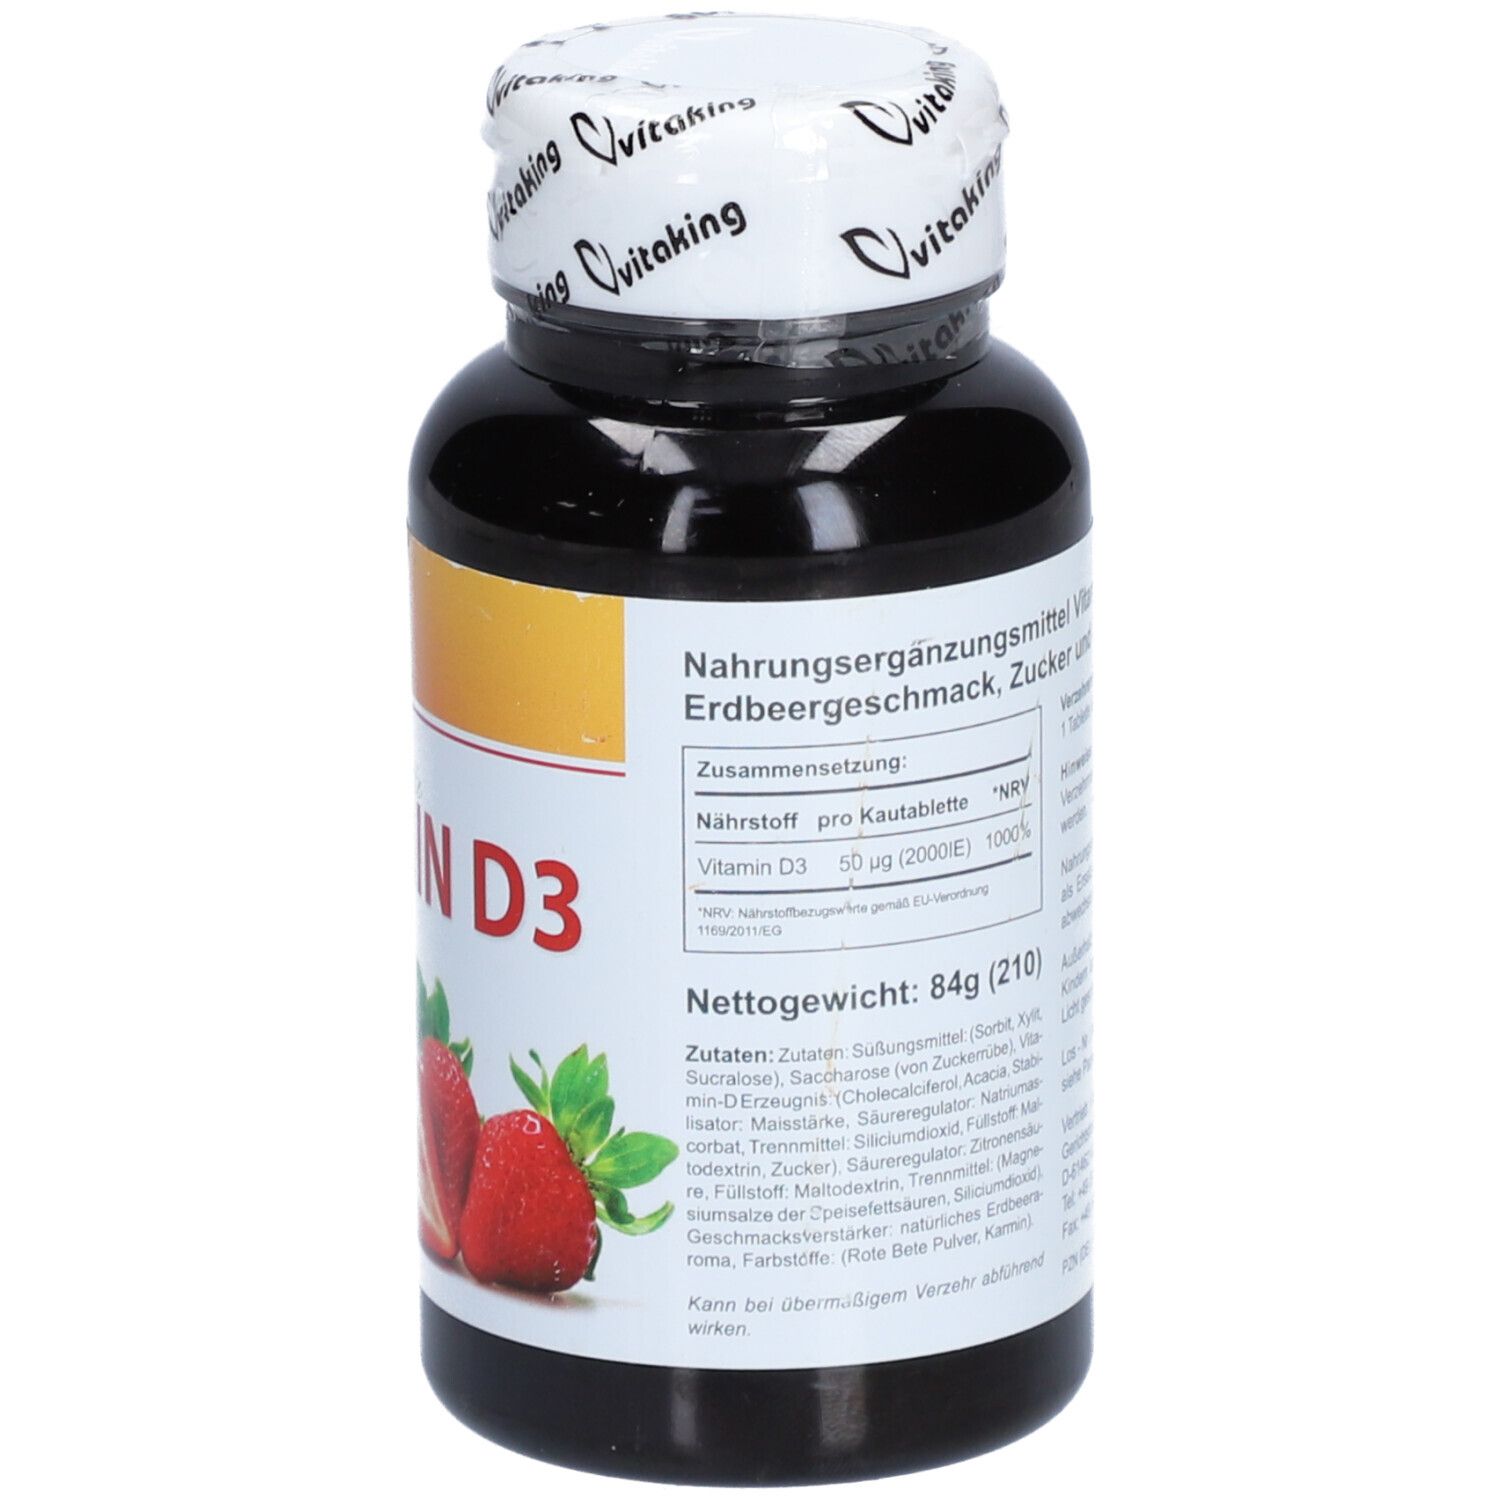 vitaking® Vitamin-D3 mit Erdbeergeschmack 2000 I.E.